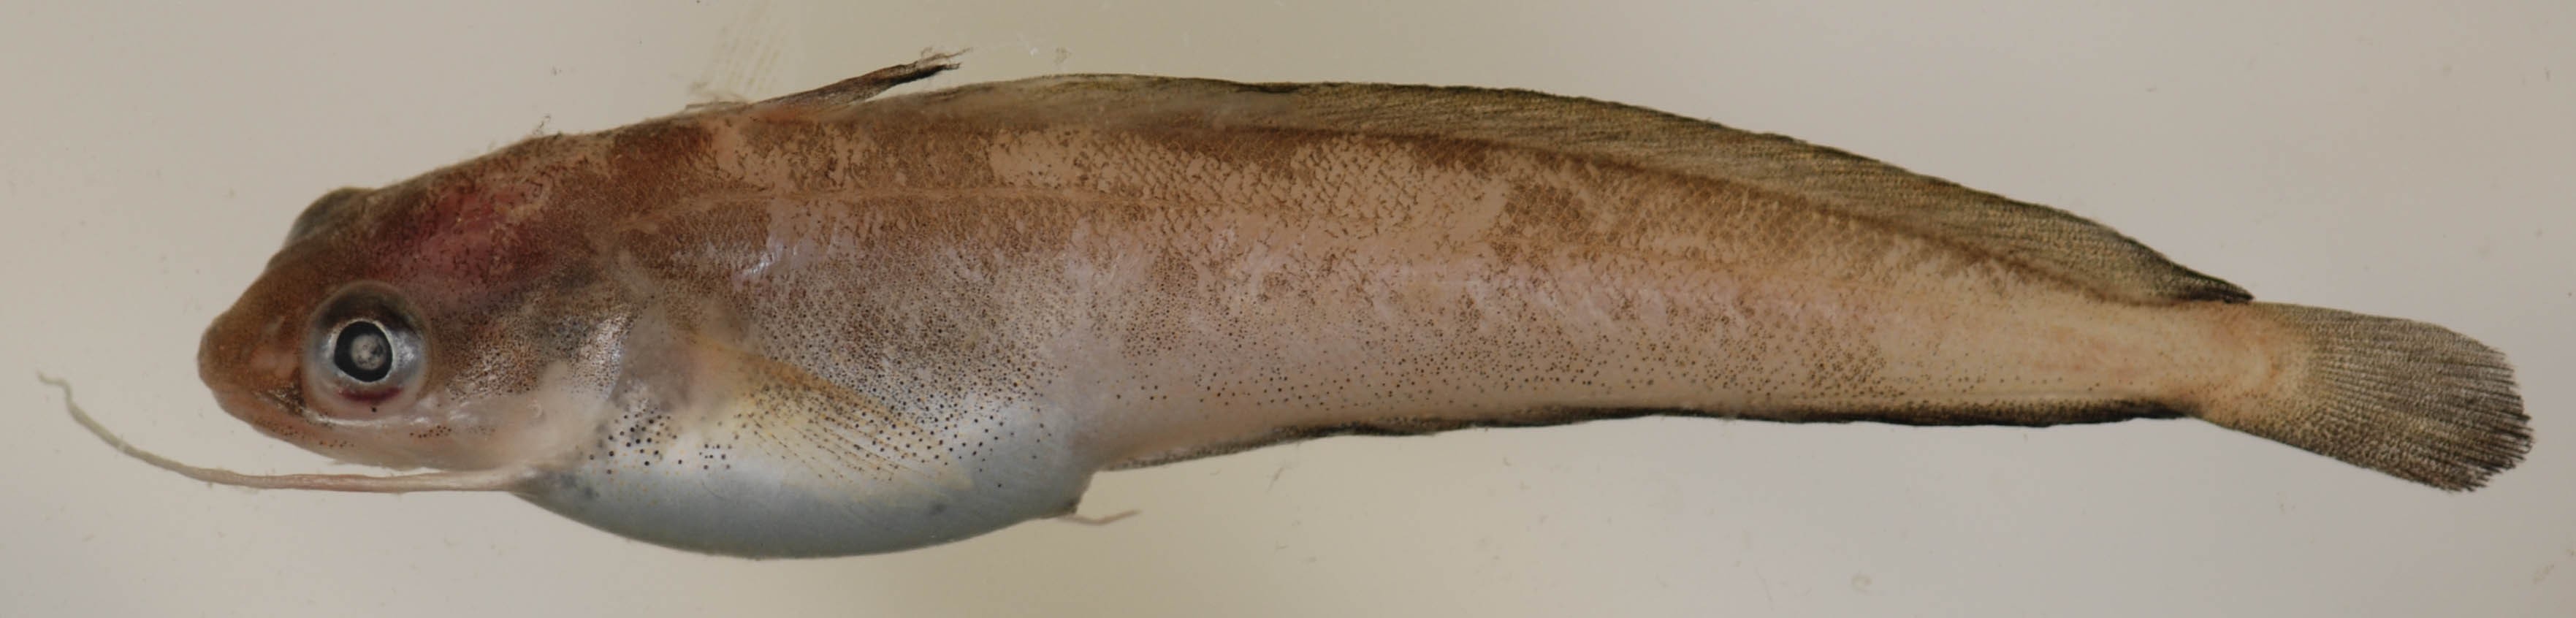 Налим нитеперый красный (Urophycis chuss) - Picture Fish